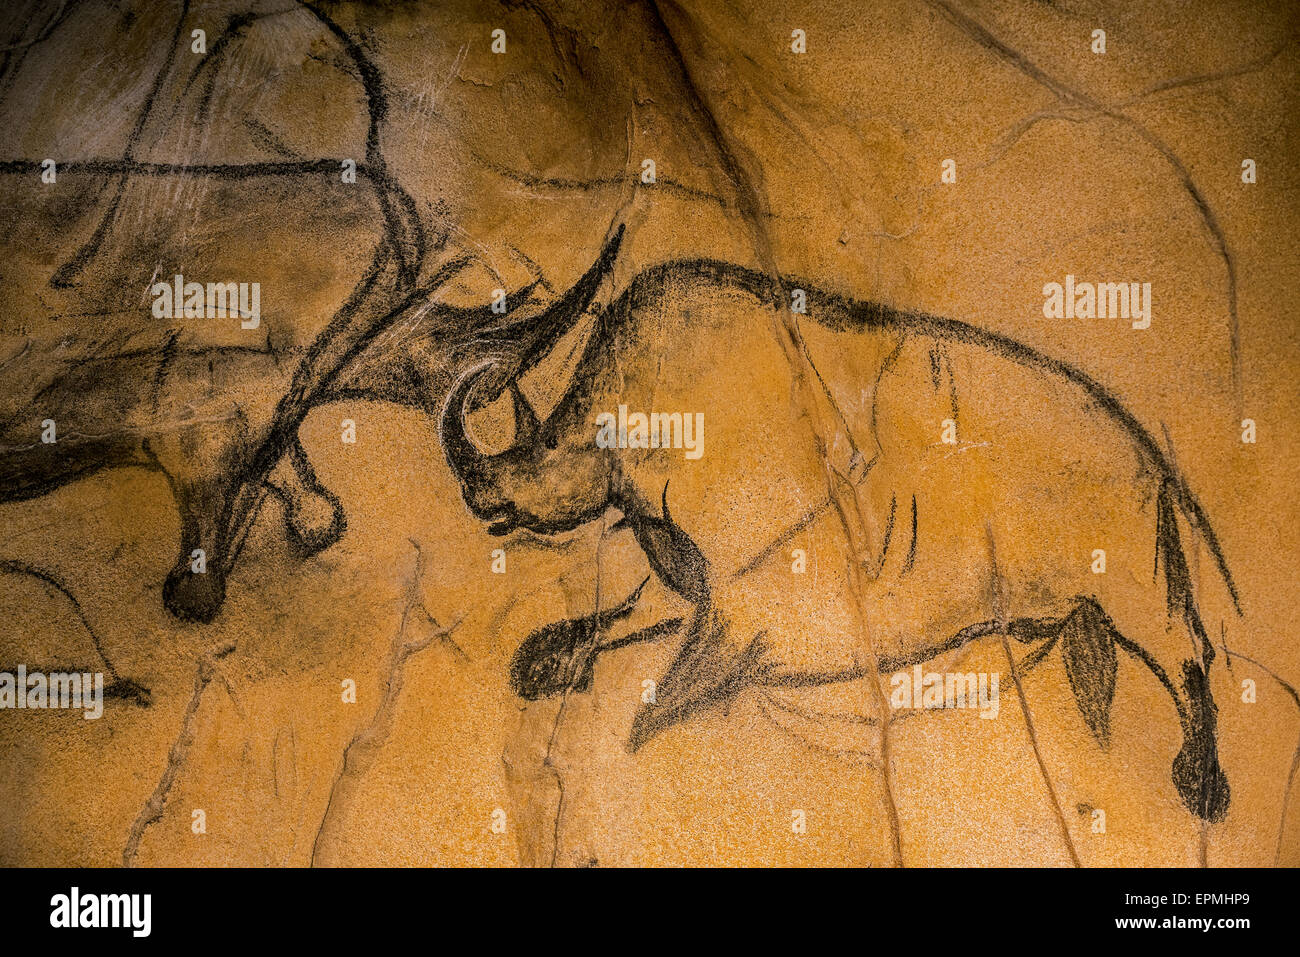 Réplique de la peinture rupestre préhistorique de la grotte Chauvet, Grotte Chauvet-Pont-d'Arc, Ardèche, France, montrant disparue rhinocéros laineux Banque D'Images